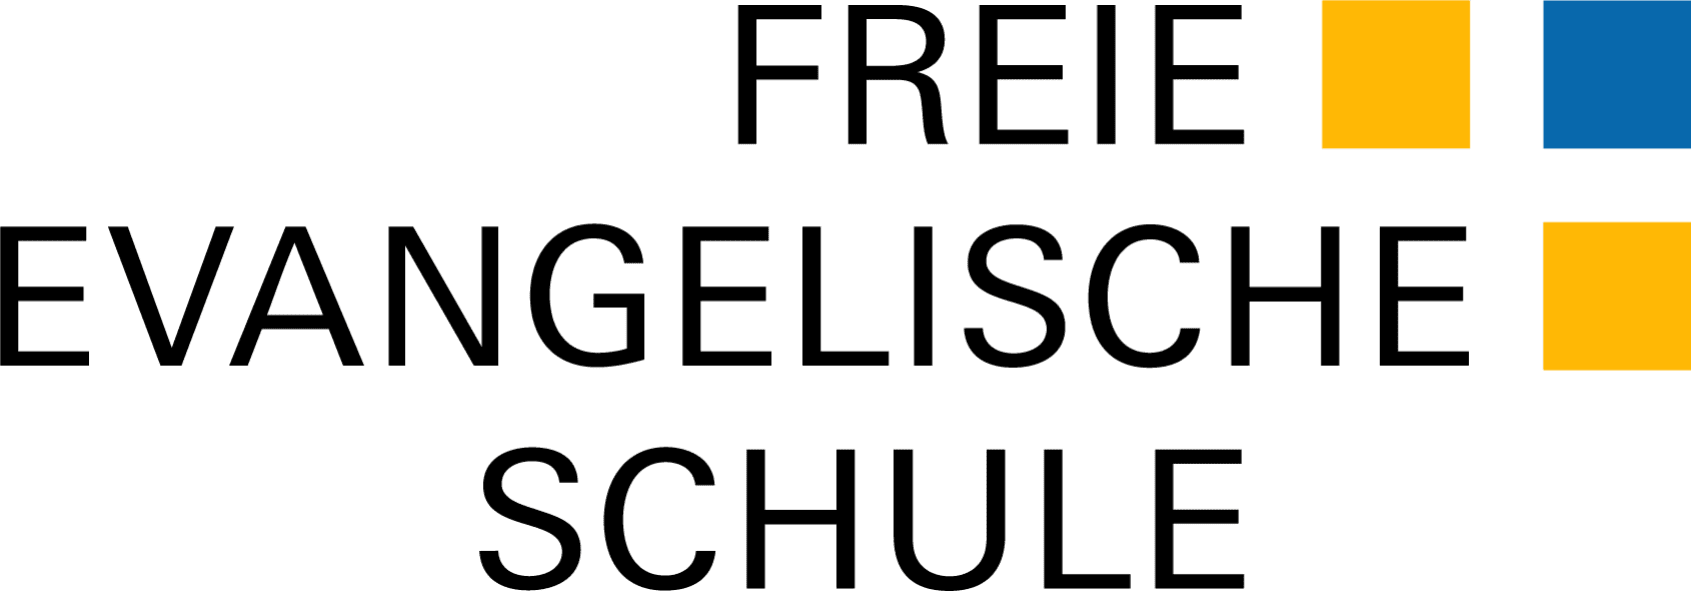 Freie Evangelische Schule Zürich